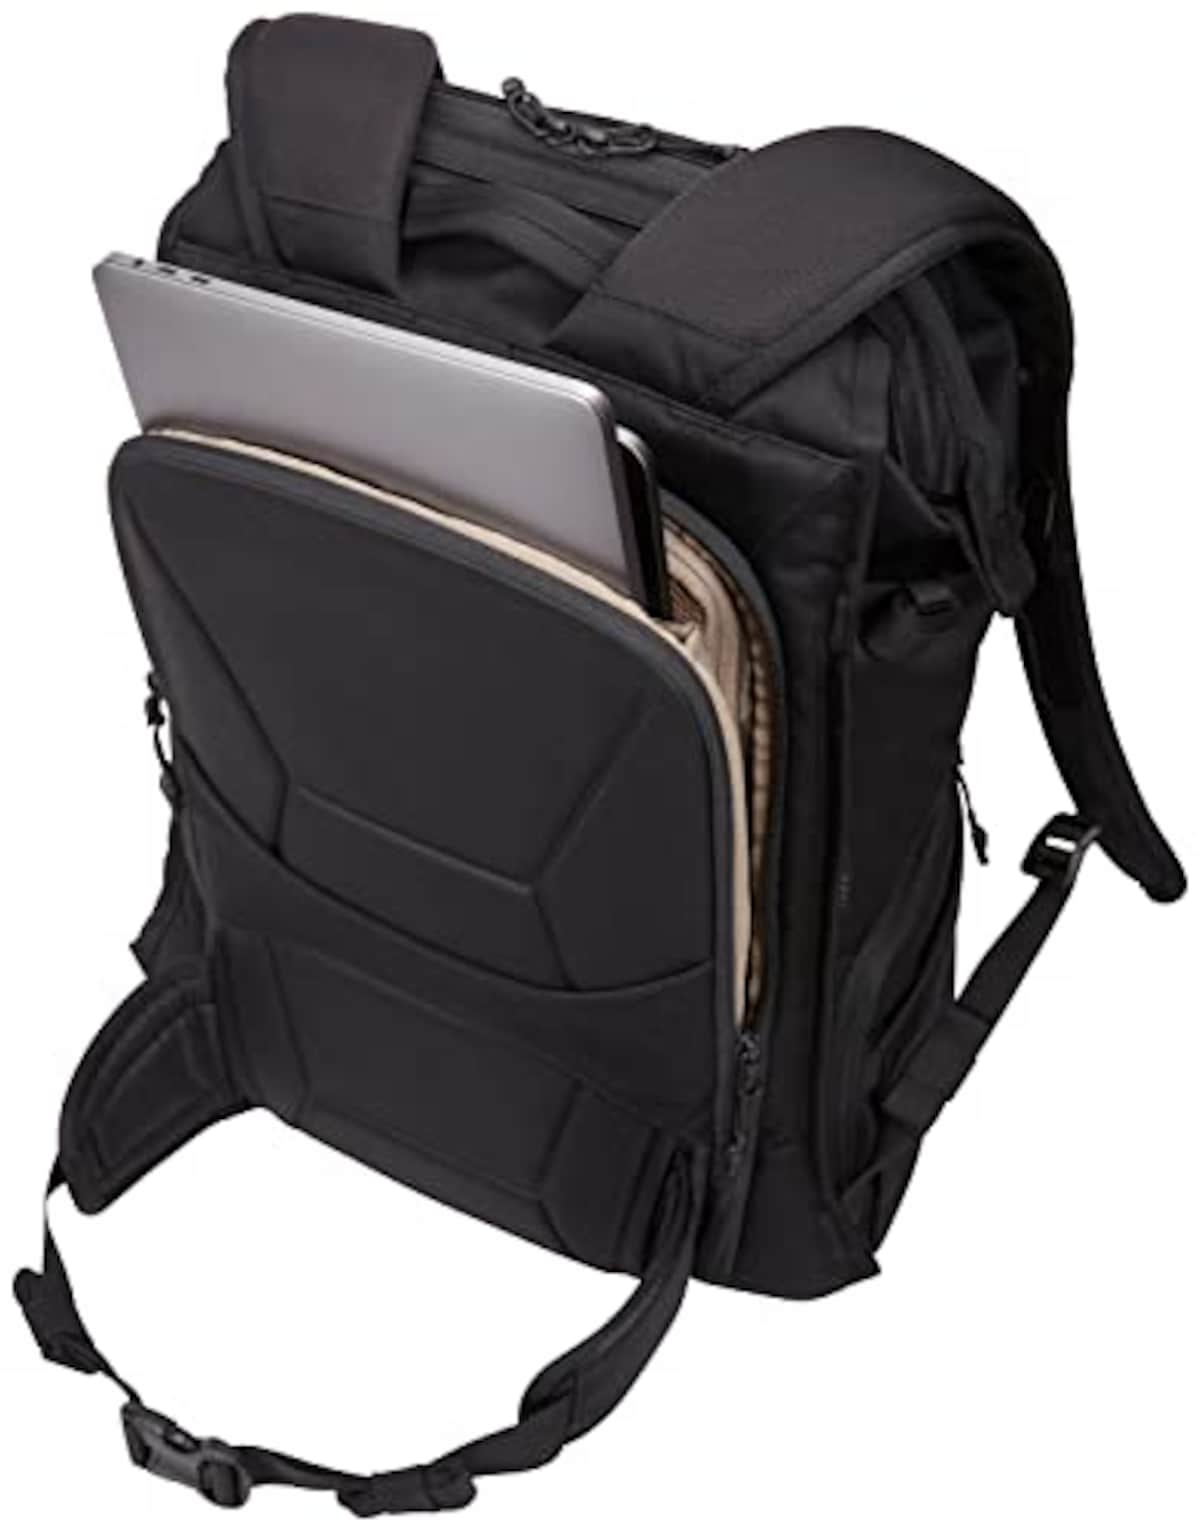  [スーリー] カメラ用バッグパック Covert Camera Backpack Black 容量:24L 3203906画像8 